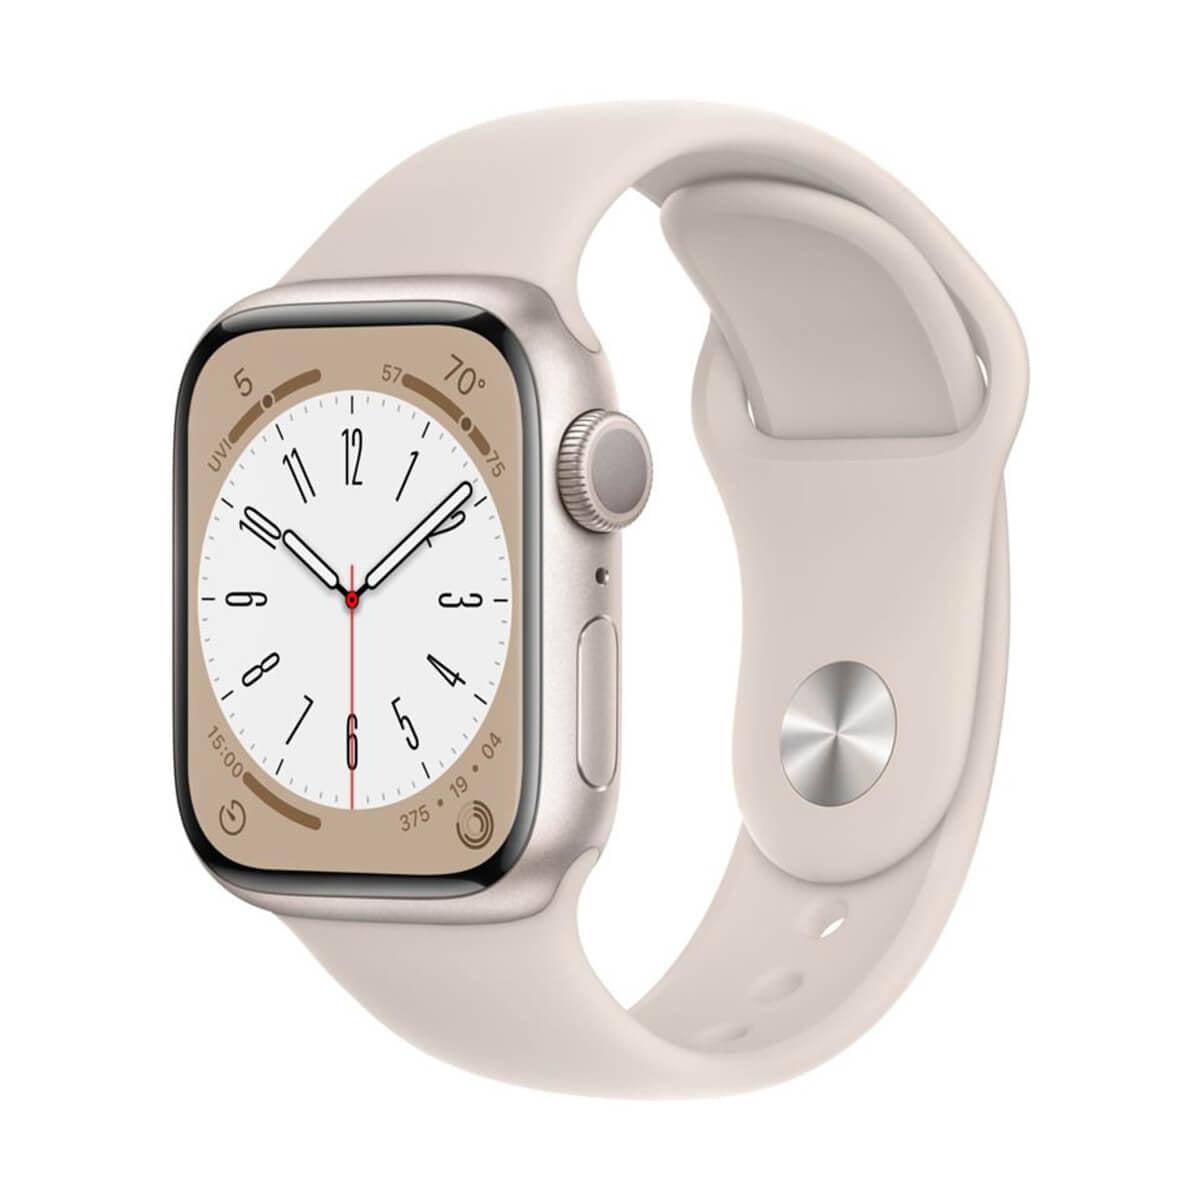 Apple Watch Series 8 szerviz, javítás